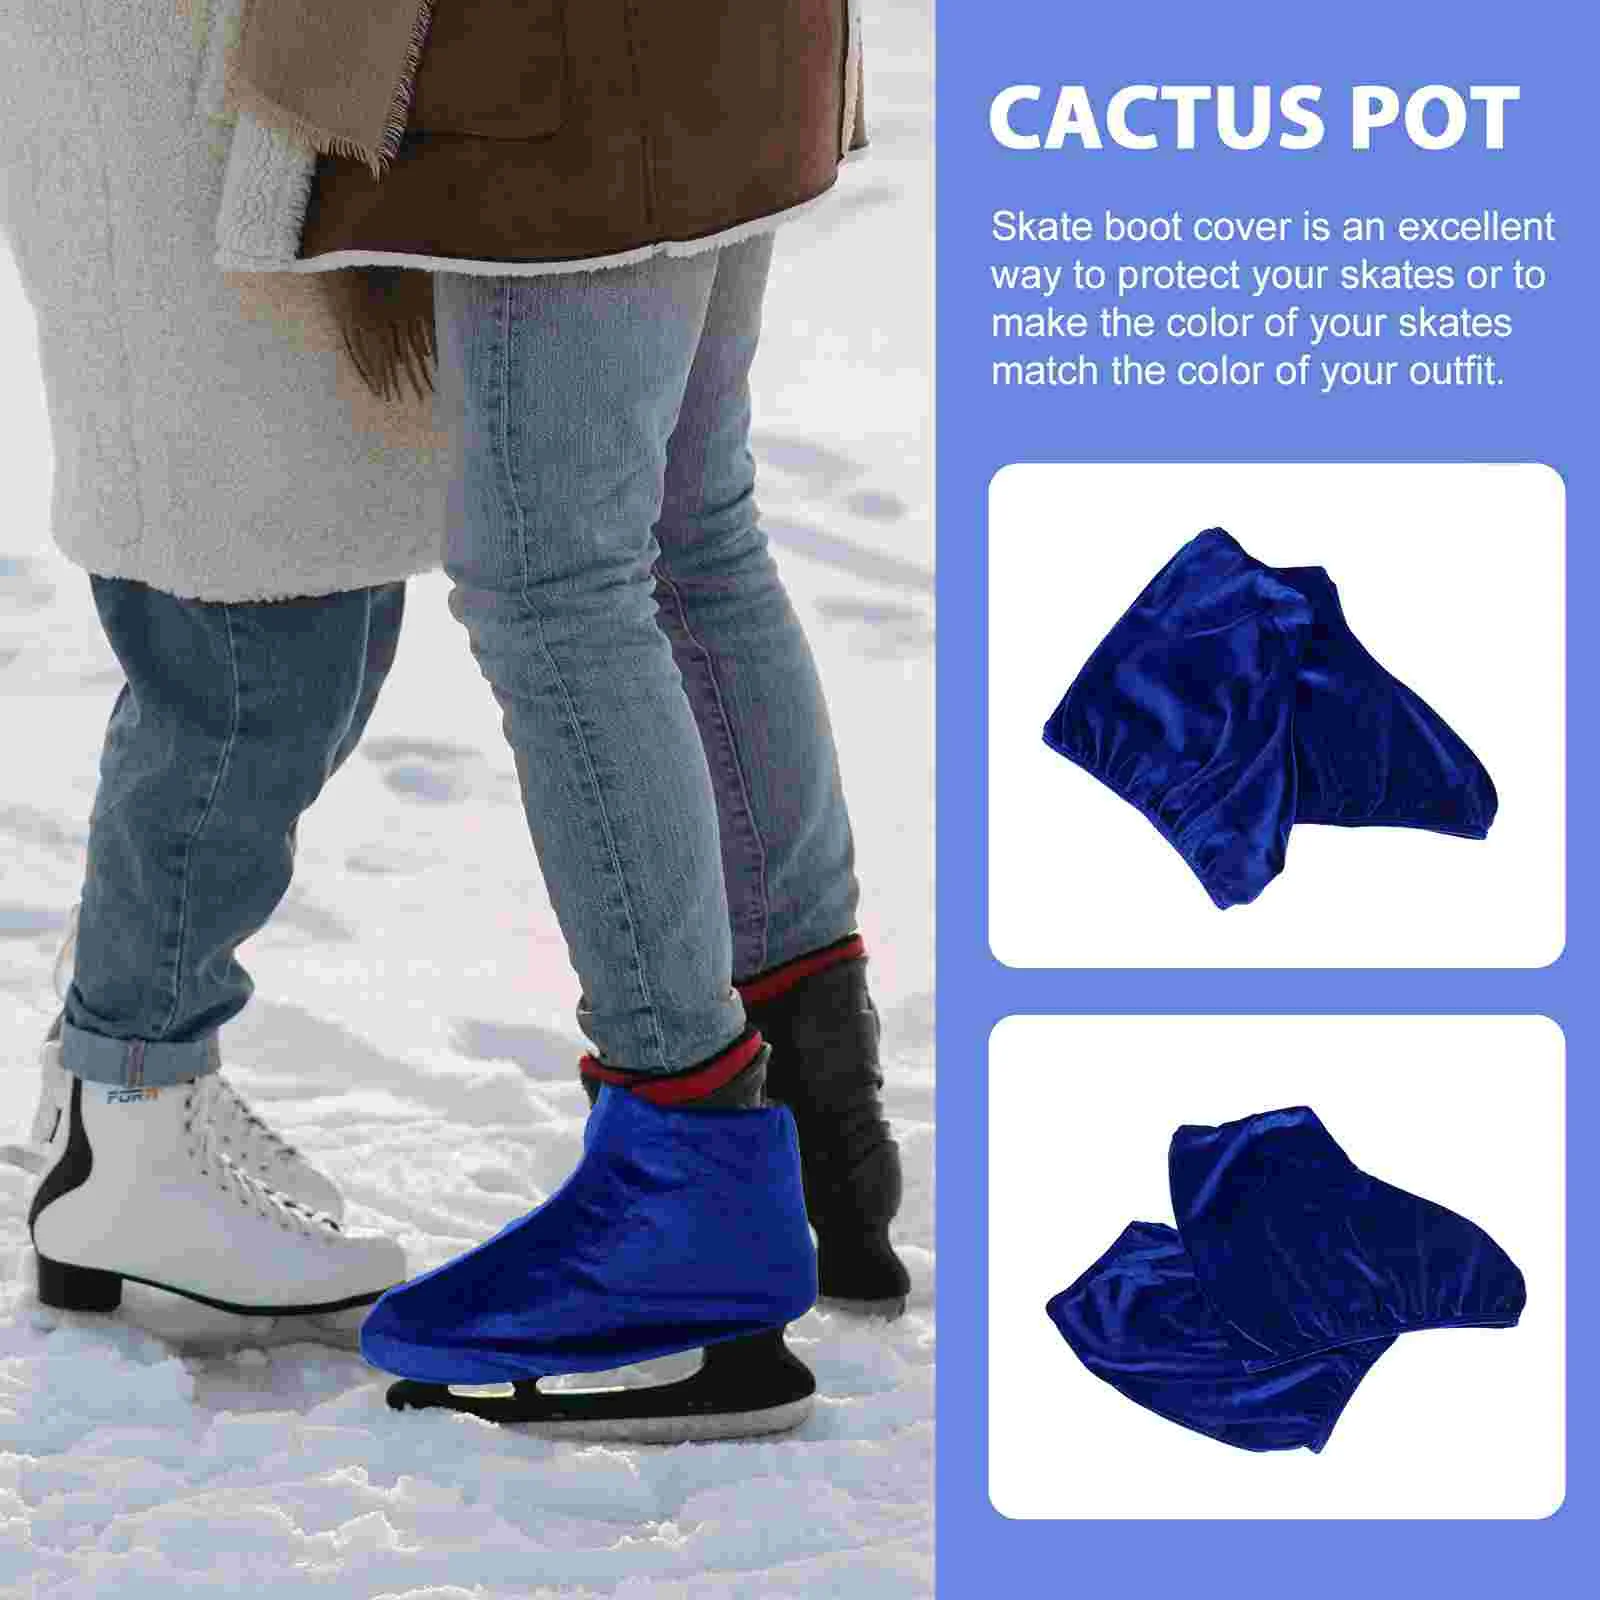 Kid Stuff Skate Covers Ice Portable Boot protezioni per pattinaggio a rotelle pattini protettivi uomo donna Hockey